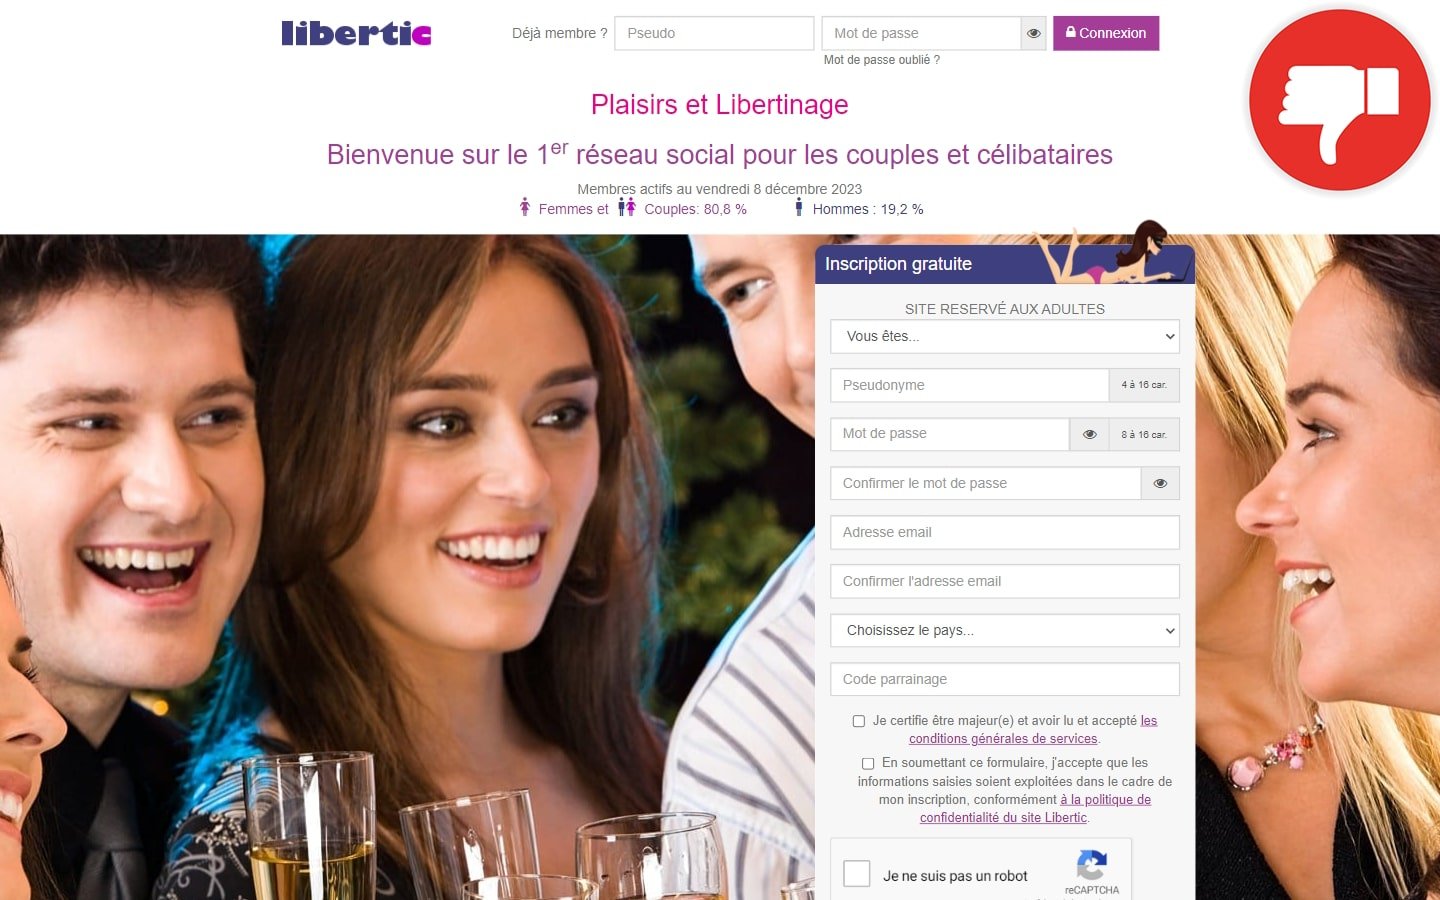 Libertic.com